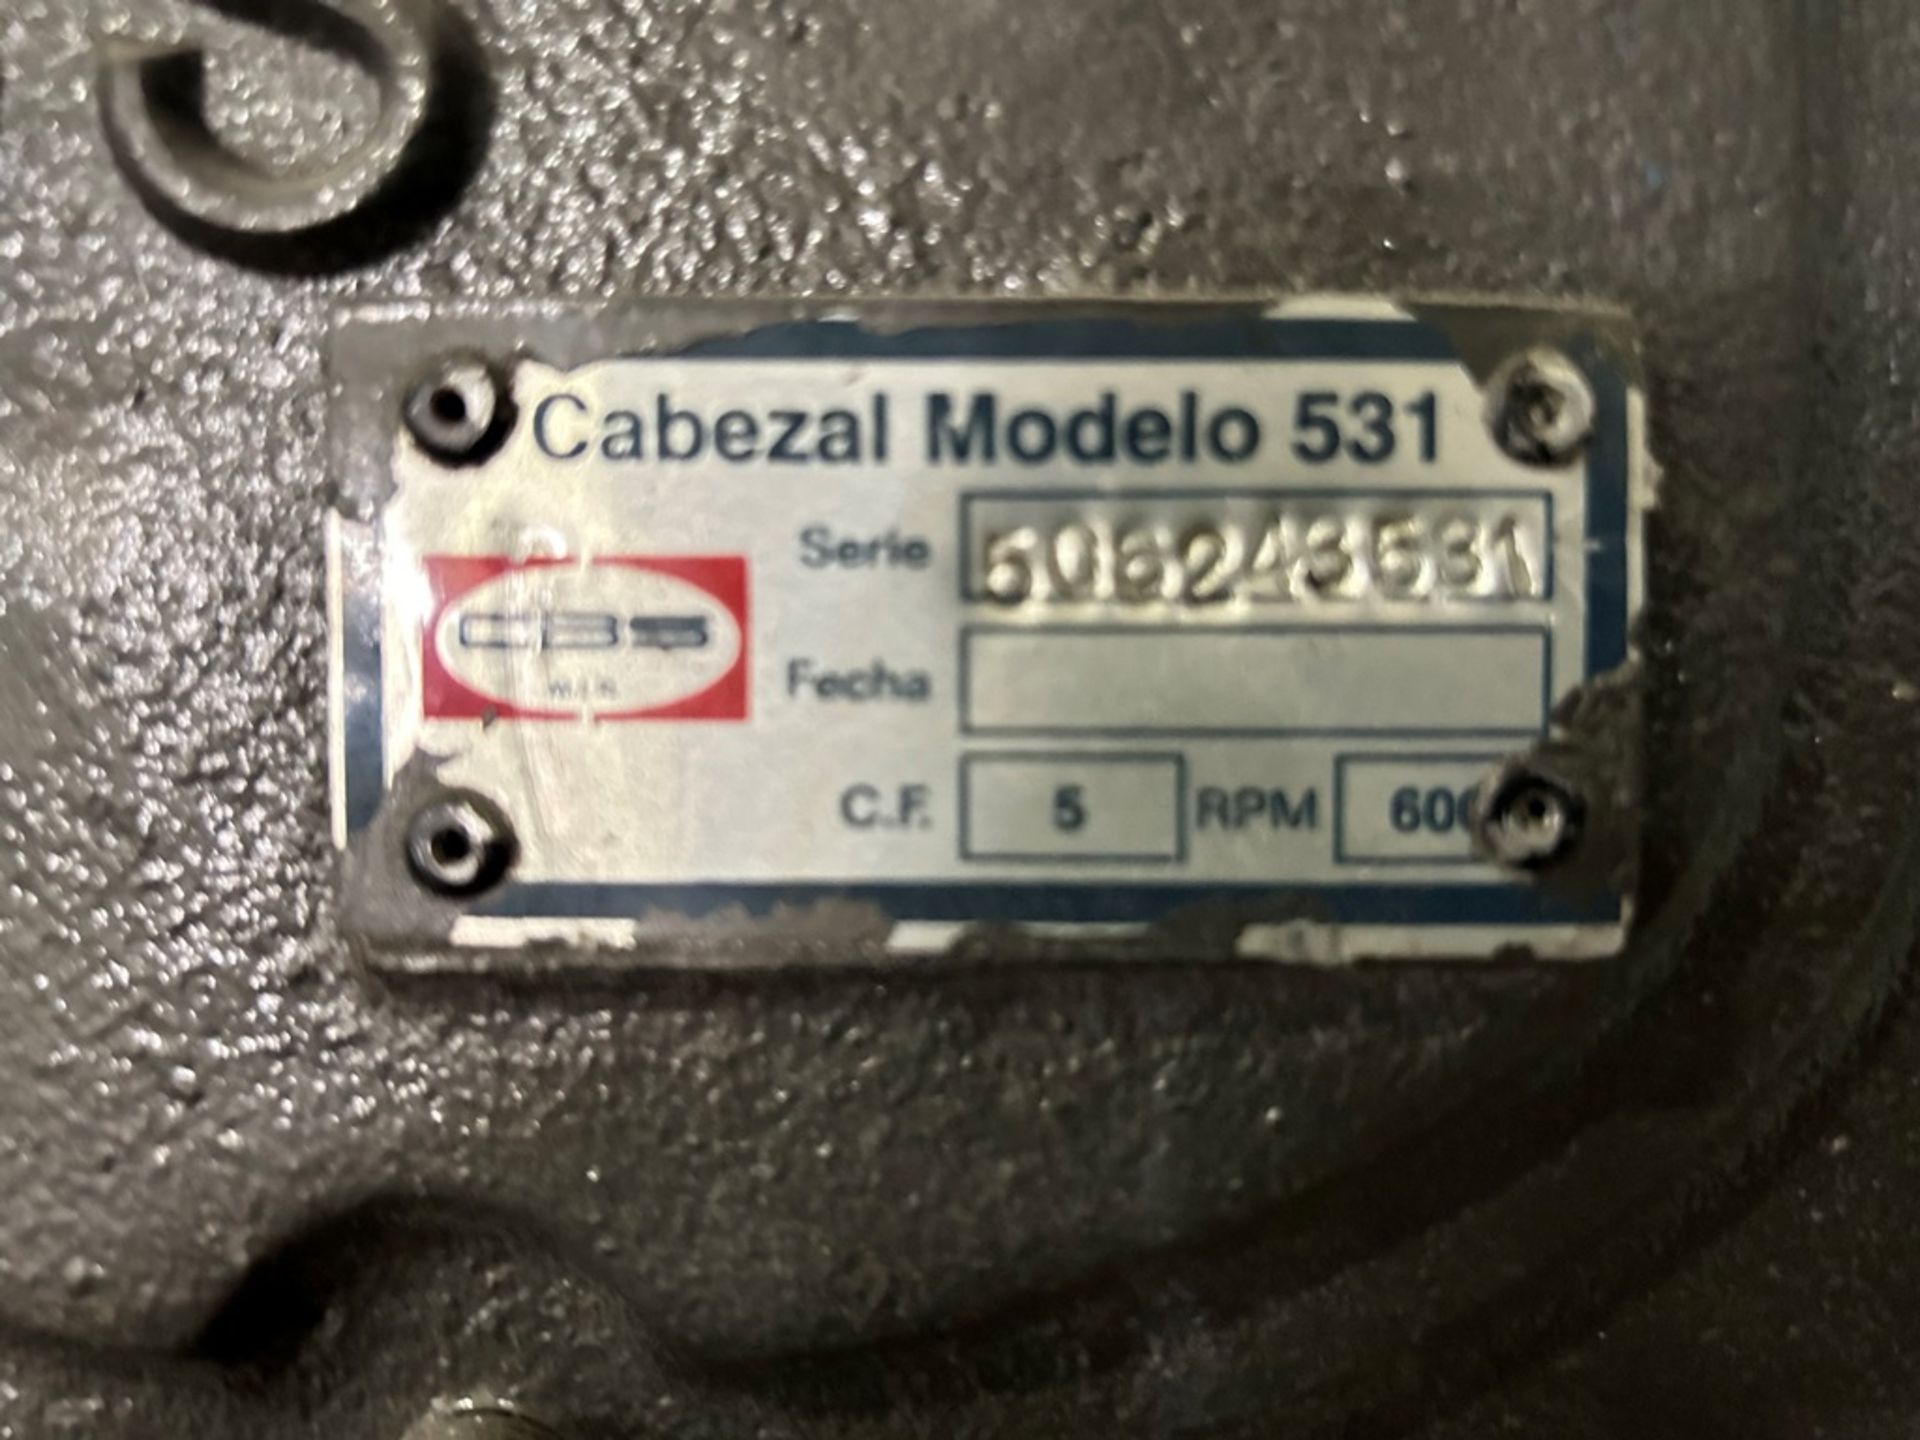 CBS Air Compressor, Model 5120531, Serial No. 506243531, Year 2005, 208-230/460V, 5 hp Weg motor, p - Image 9 of 11